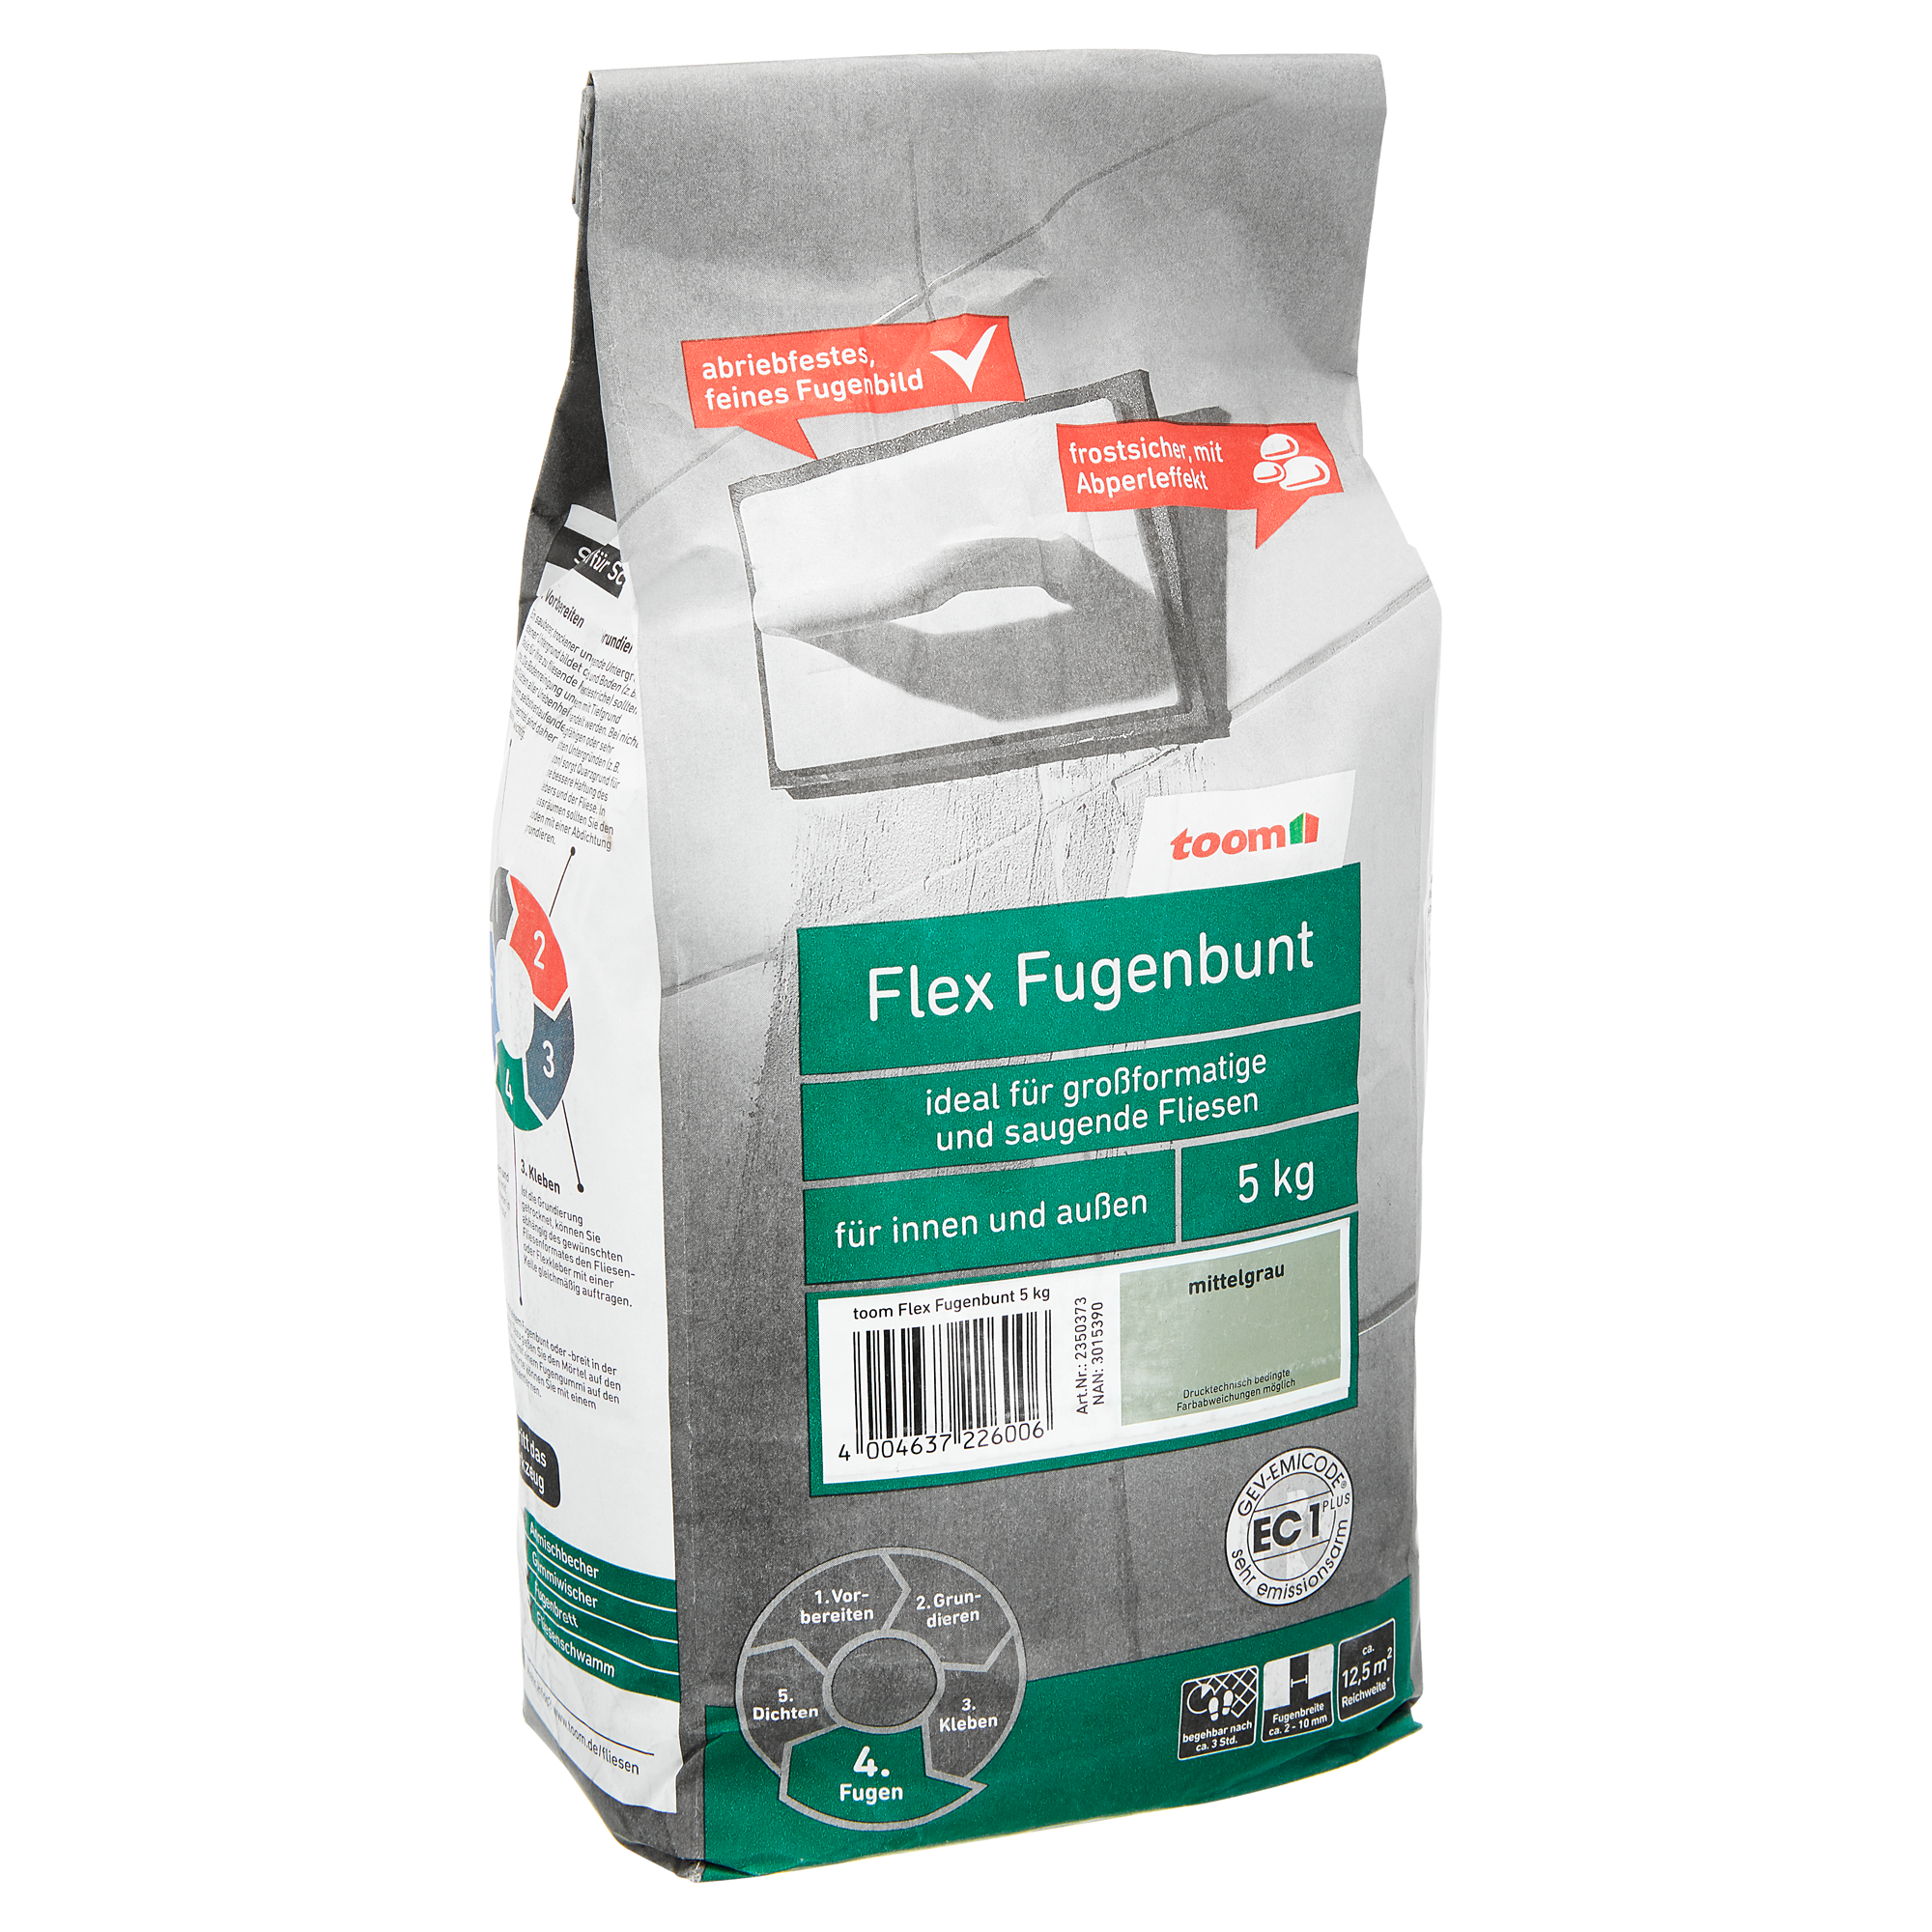 Flex-Fugenbunt      mittelgrau 5 kg toom + product picture